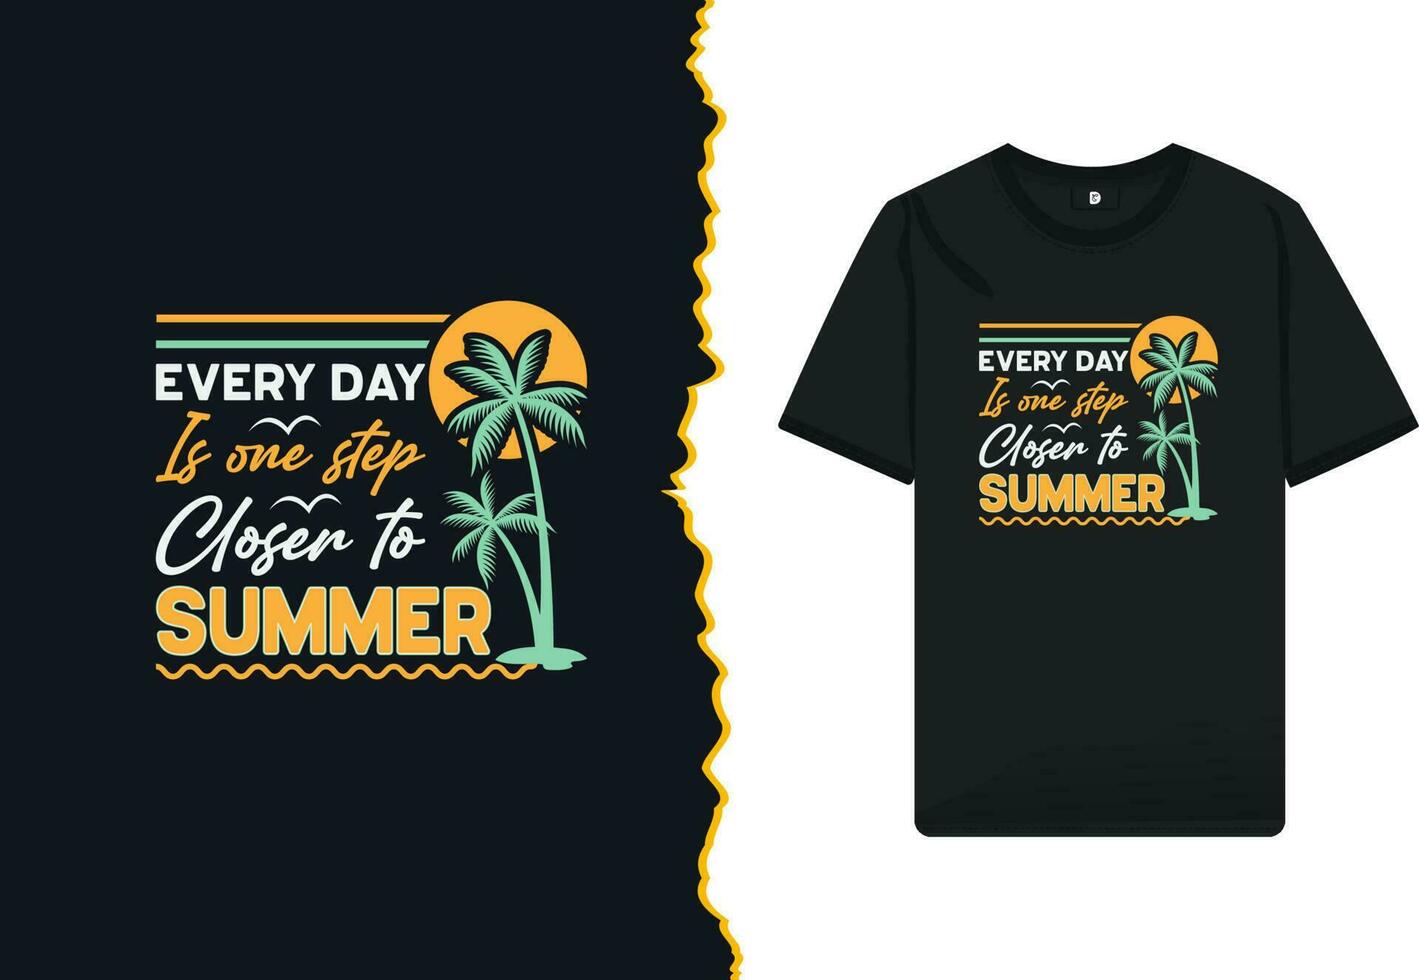 sommar typografi t-shirt design vektor mall. kreativ konst för skjortor, muggar, påsar, och Övrig skriva ut föremål. produkt Citat - varje dag är ett steg närmare till sommar.